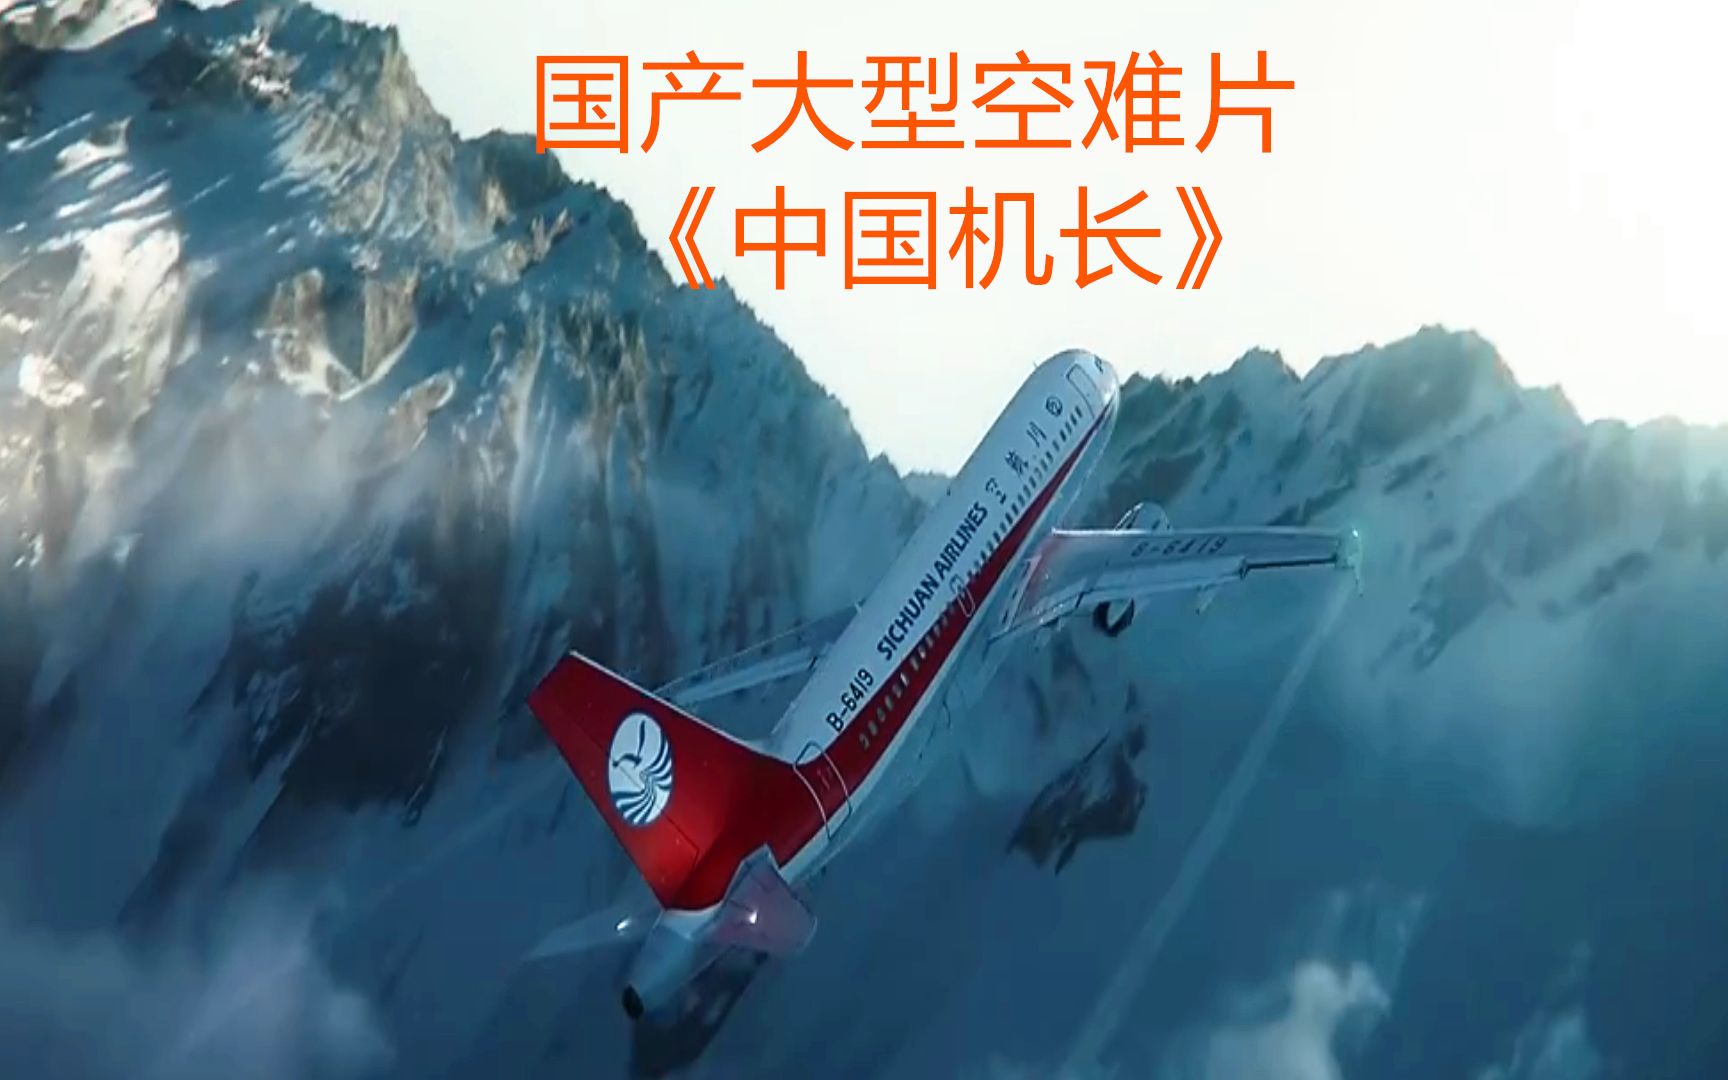 中国飞机空难电影图片